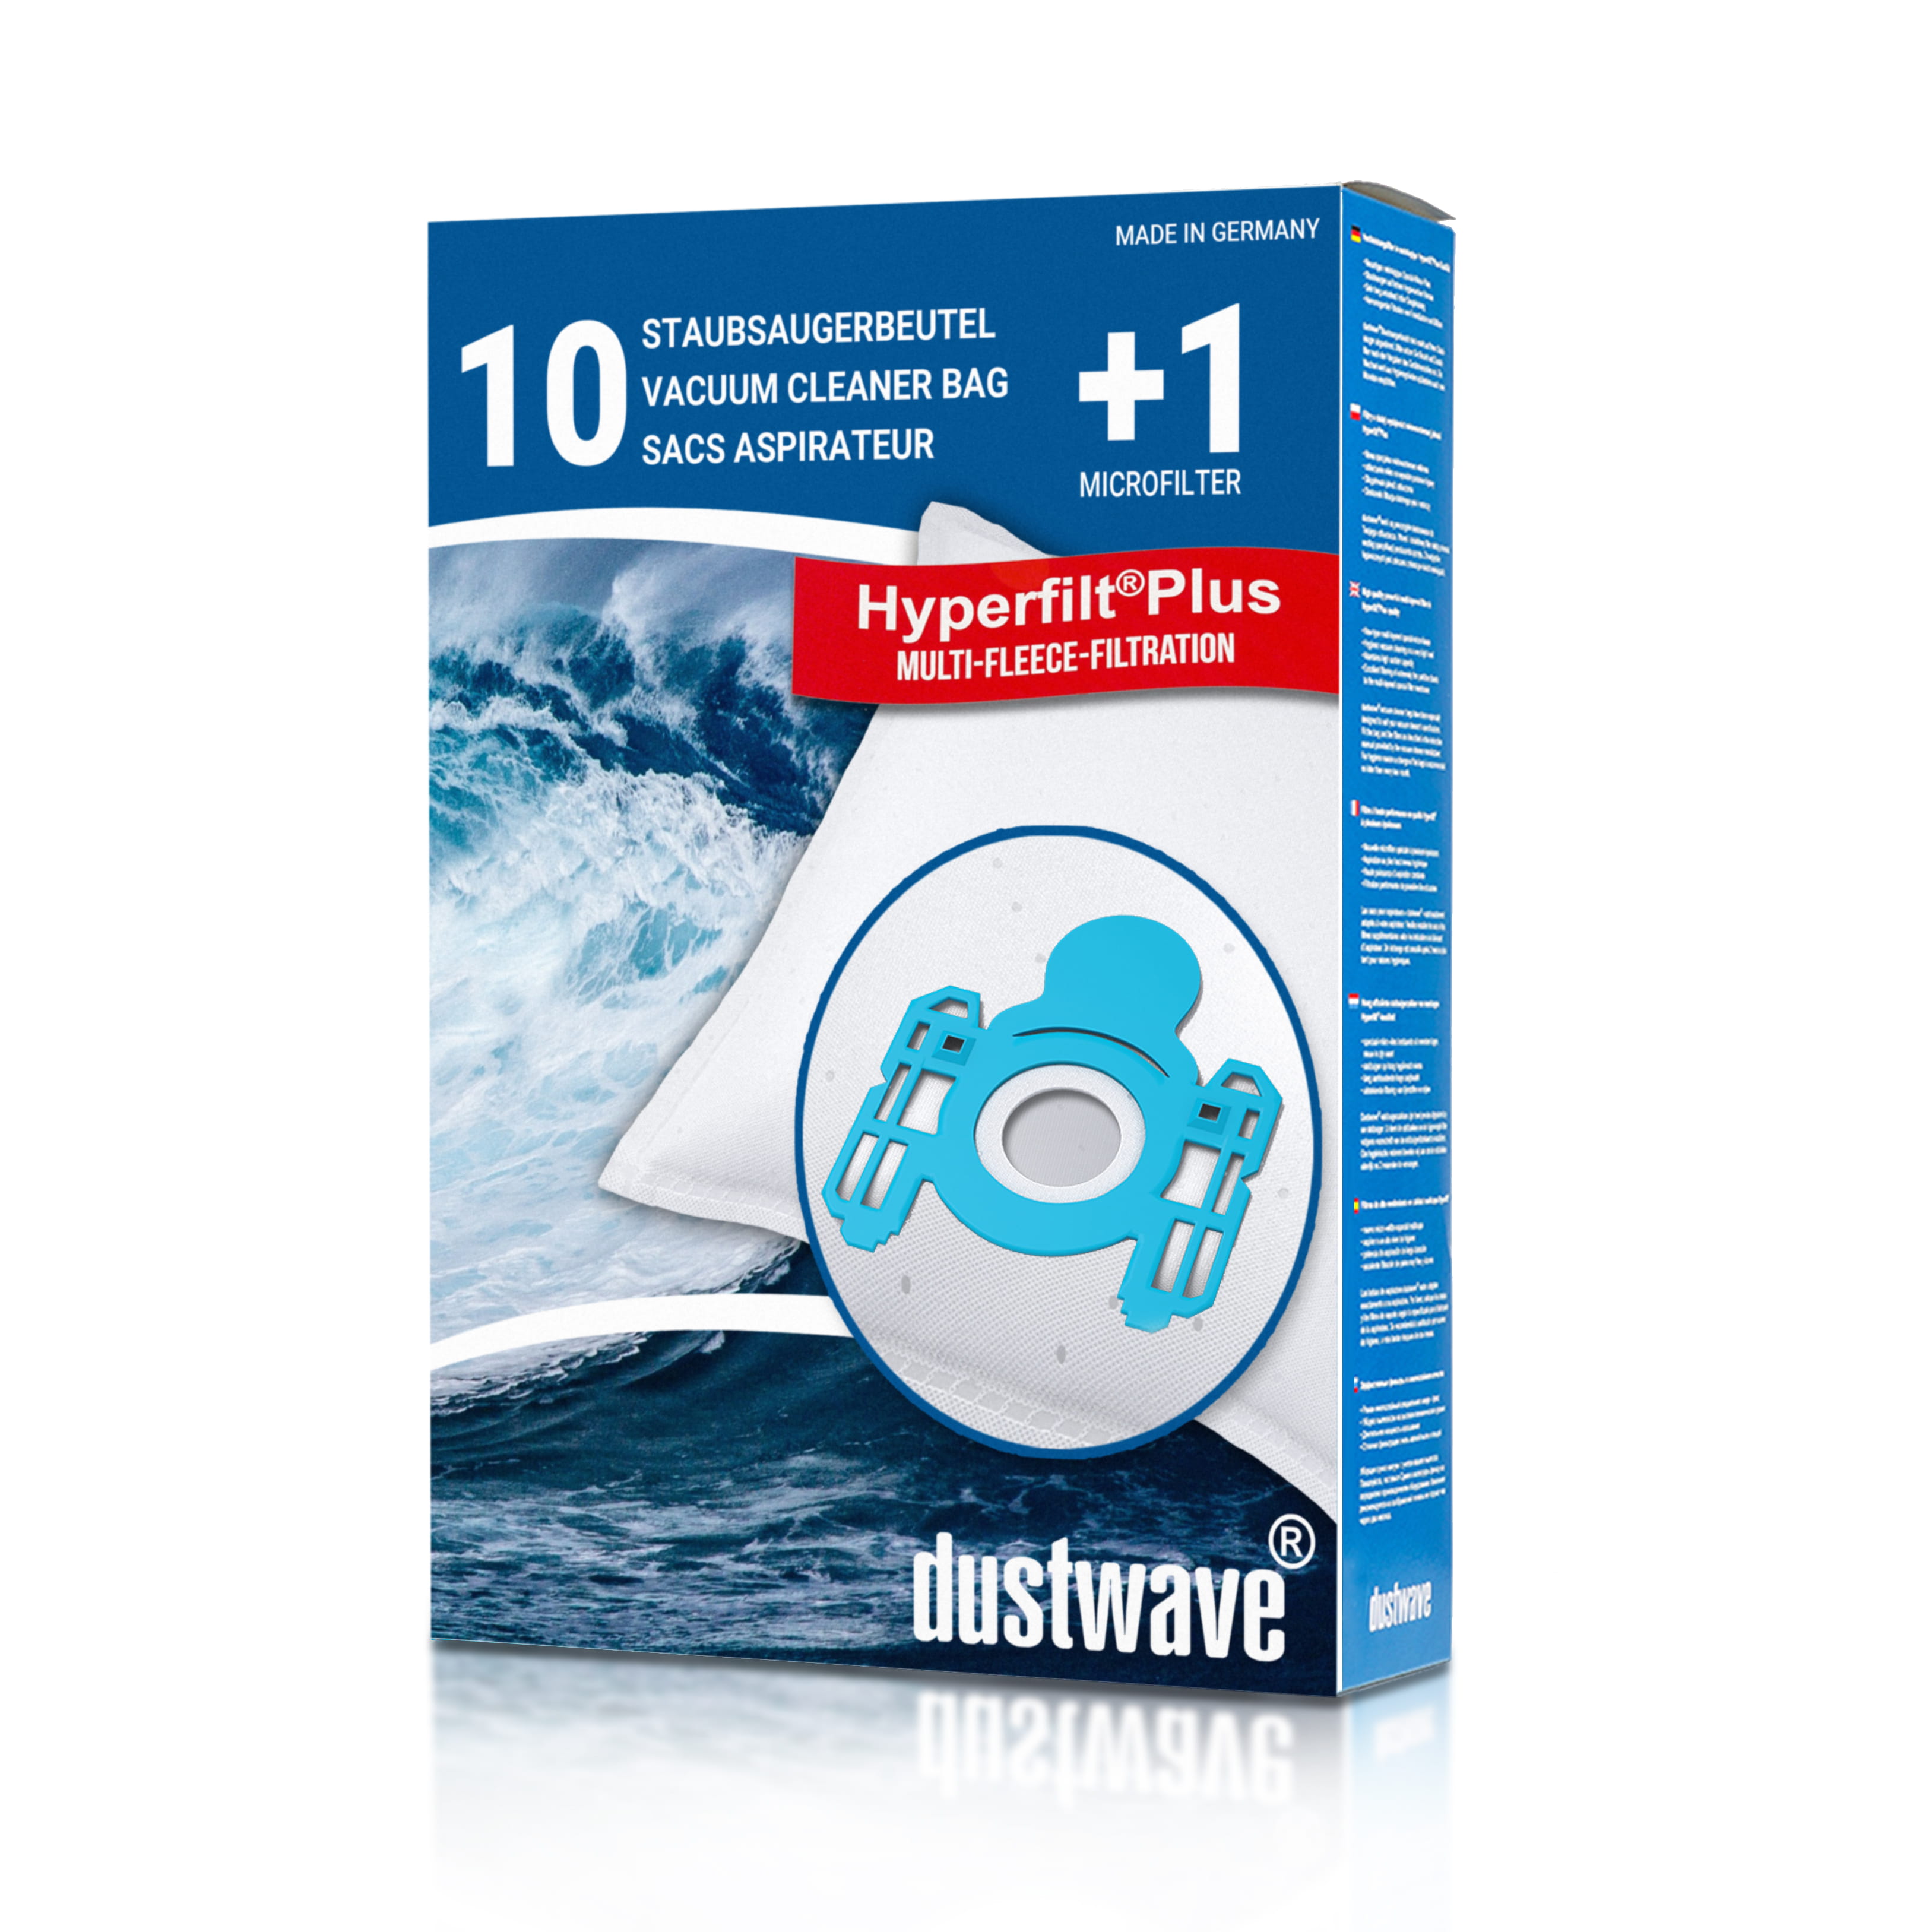 Dustwave® 10 Staubsaugerbeutel für AEG ACE Sprint / Sprint 2 - hocheffizient, mehrlagiges Mikrovlies mit Hygieneverschluss - Made in Germany